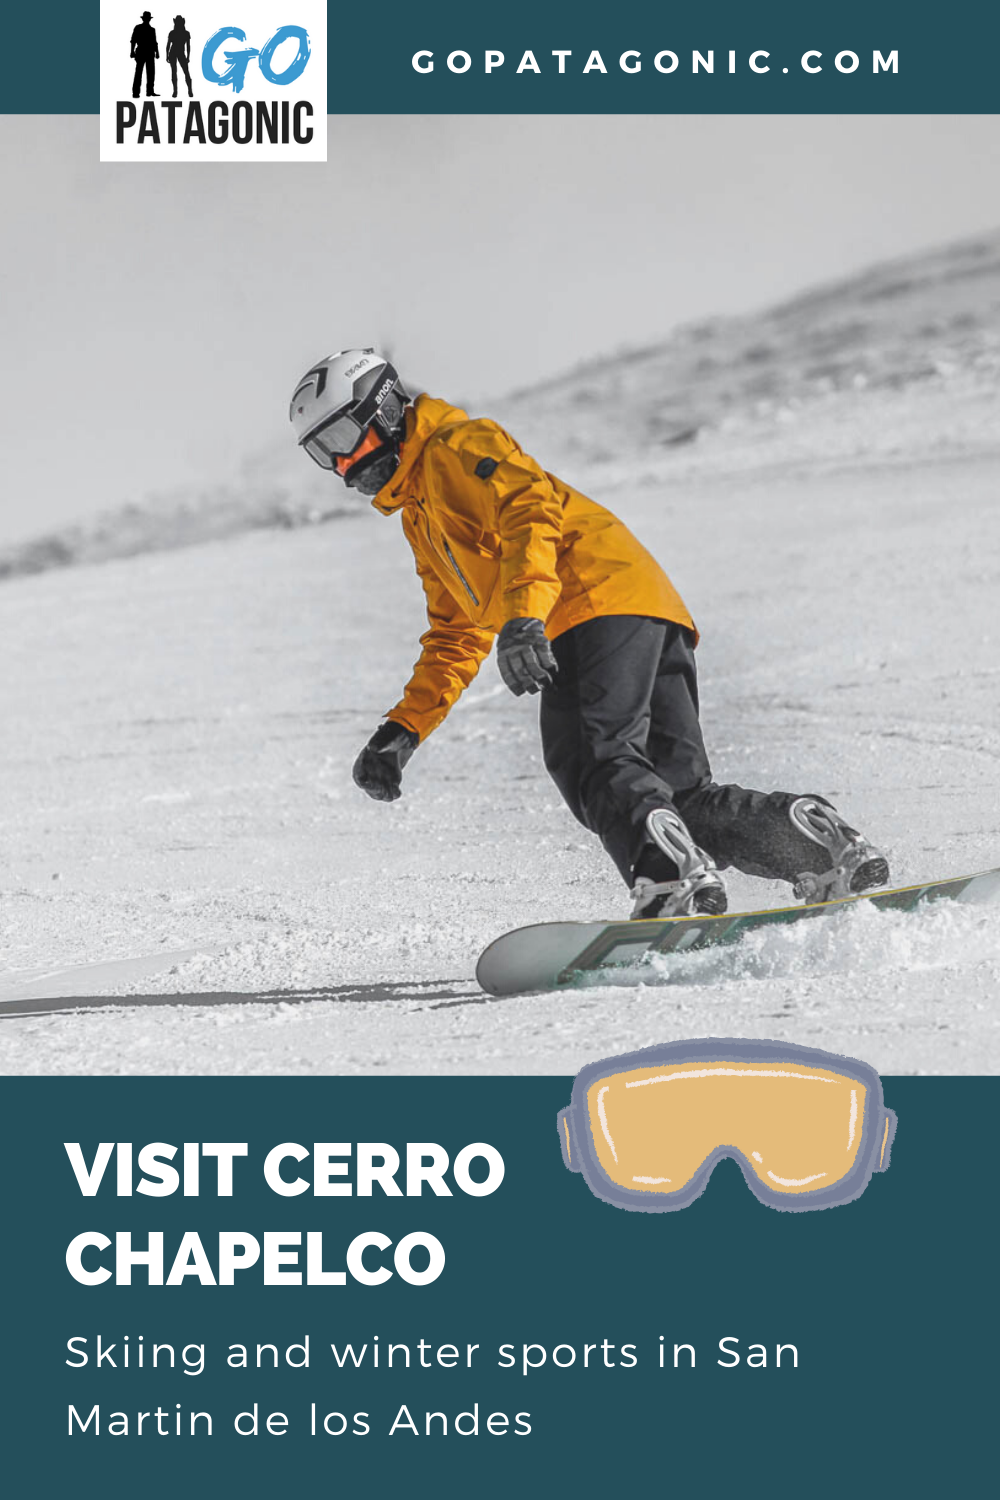 skiing in cerro chapelco